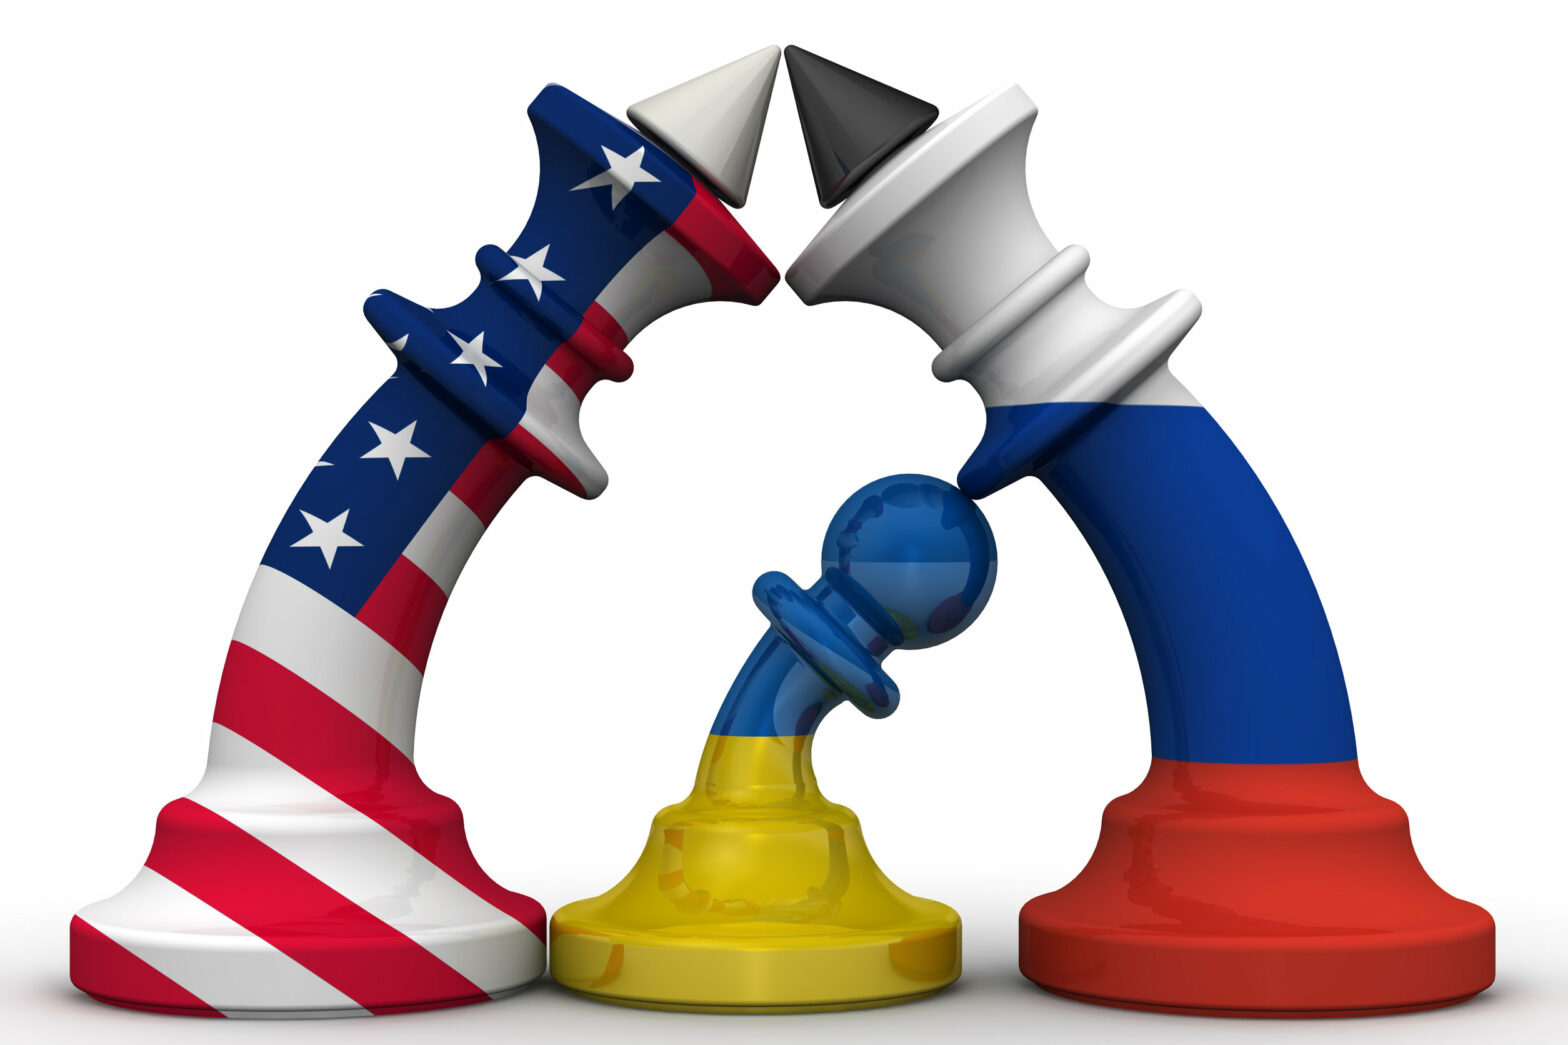 Piezas de ajedrez con la bandera de Estados Unidos, Rusia y Ucrania